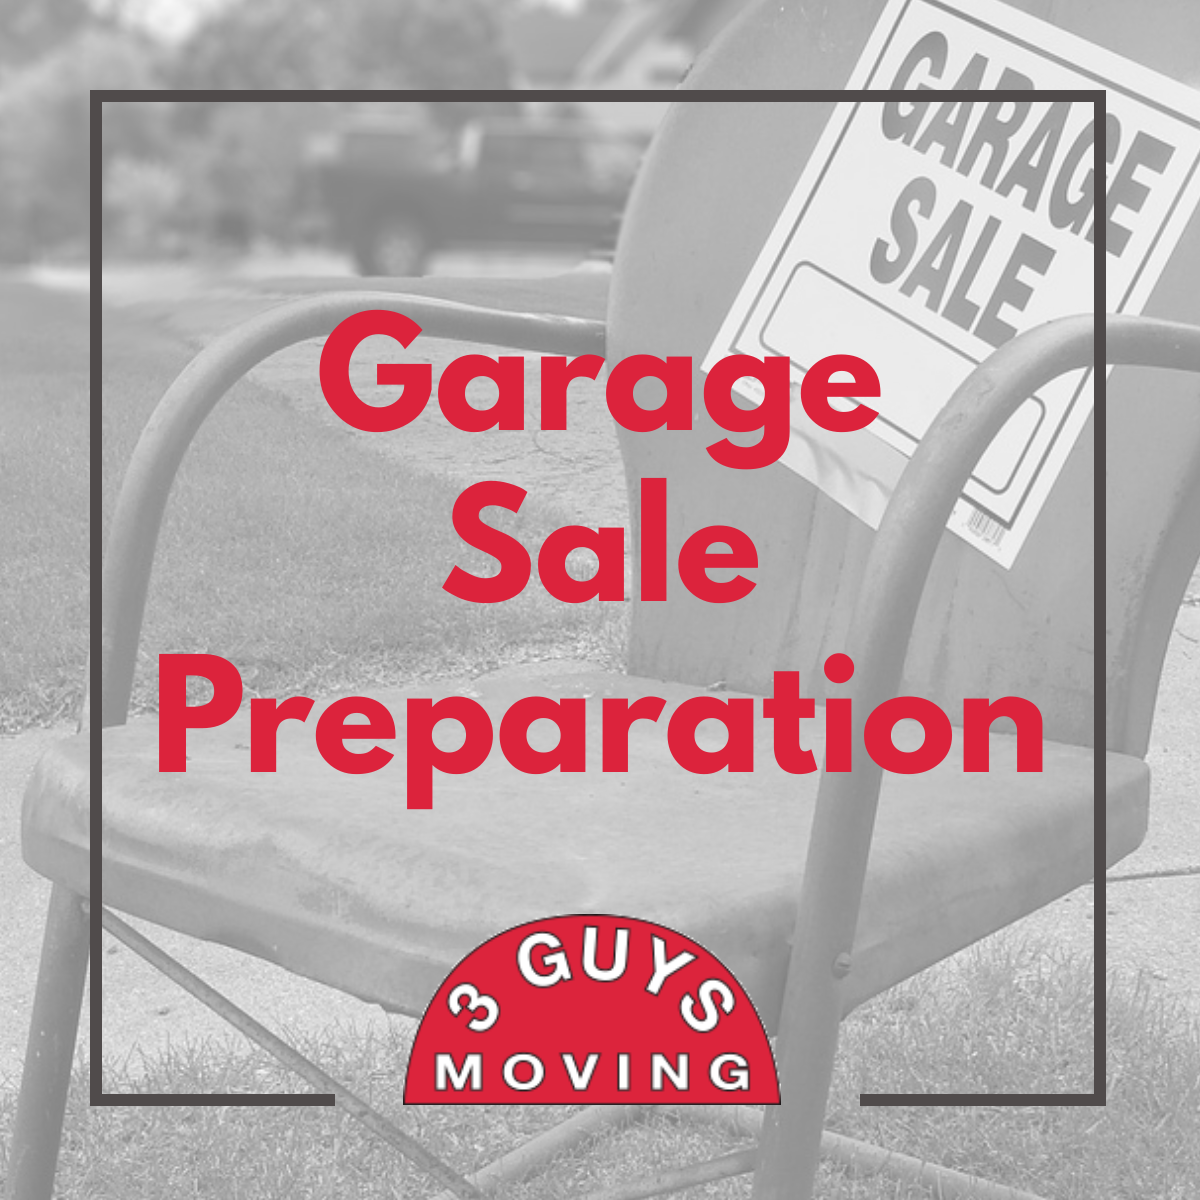 Garage Sale Preparation - Garage Sale Preparation